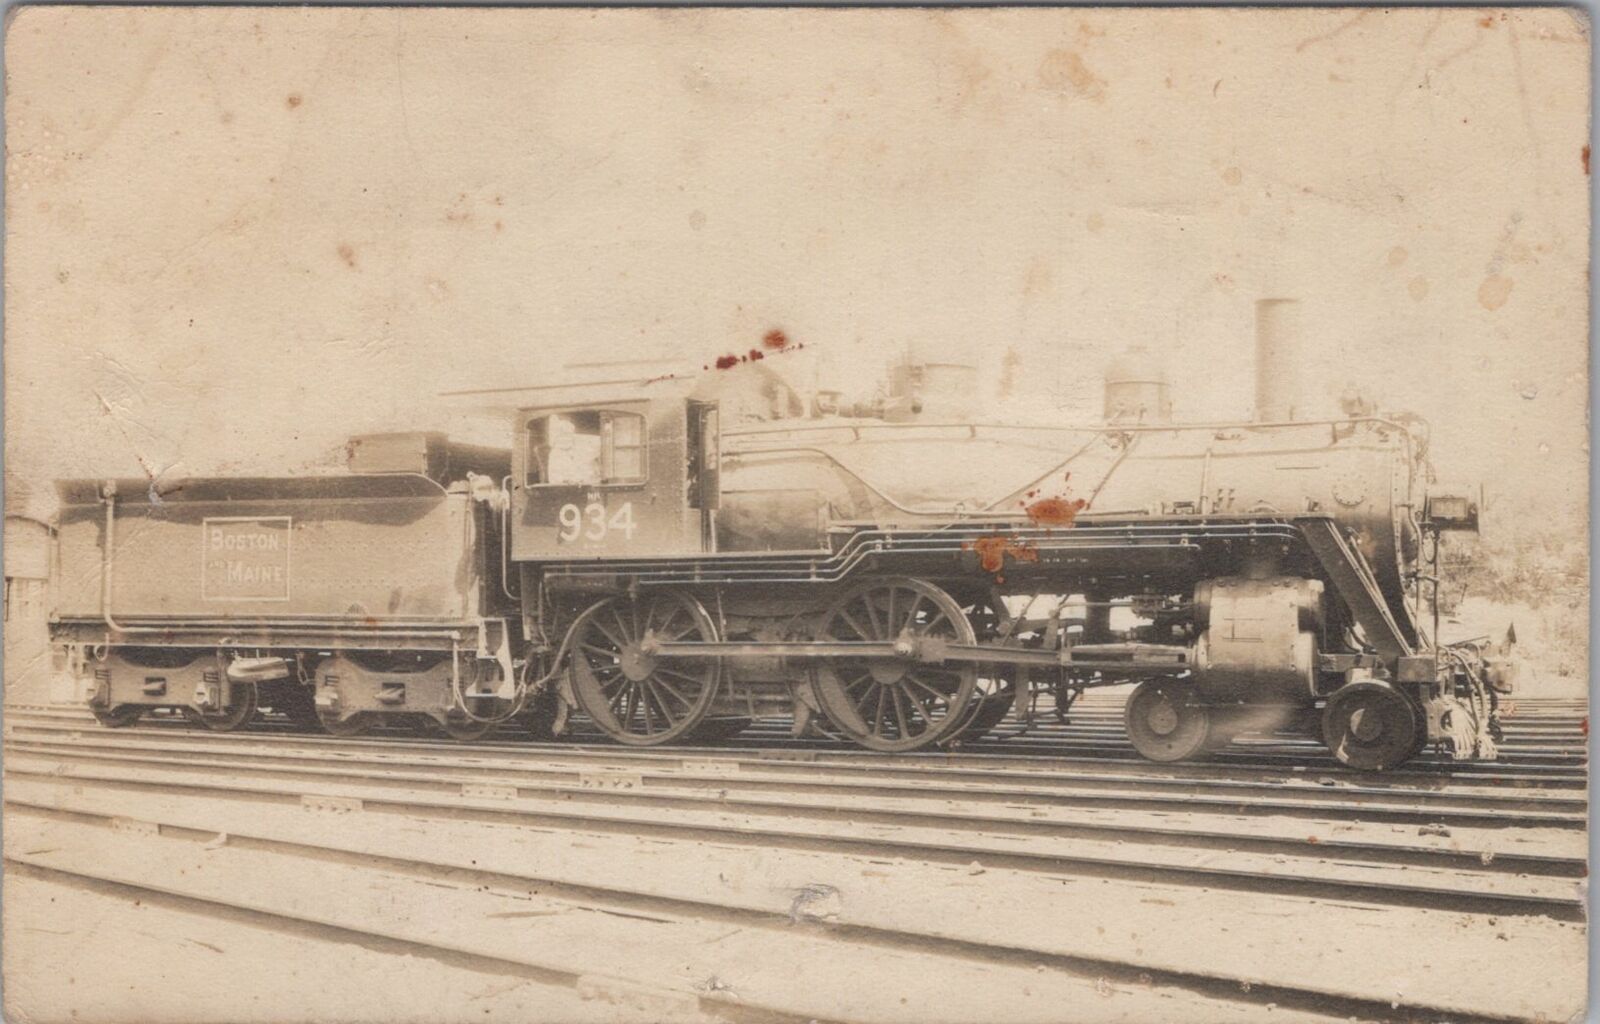 Boston Maine 934 Railroad Train Engine Ferroviagraph RPPC Postcard